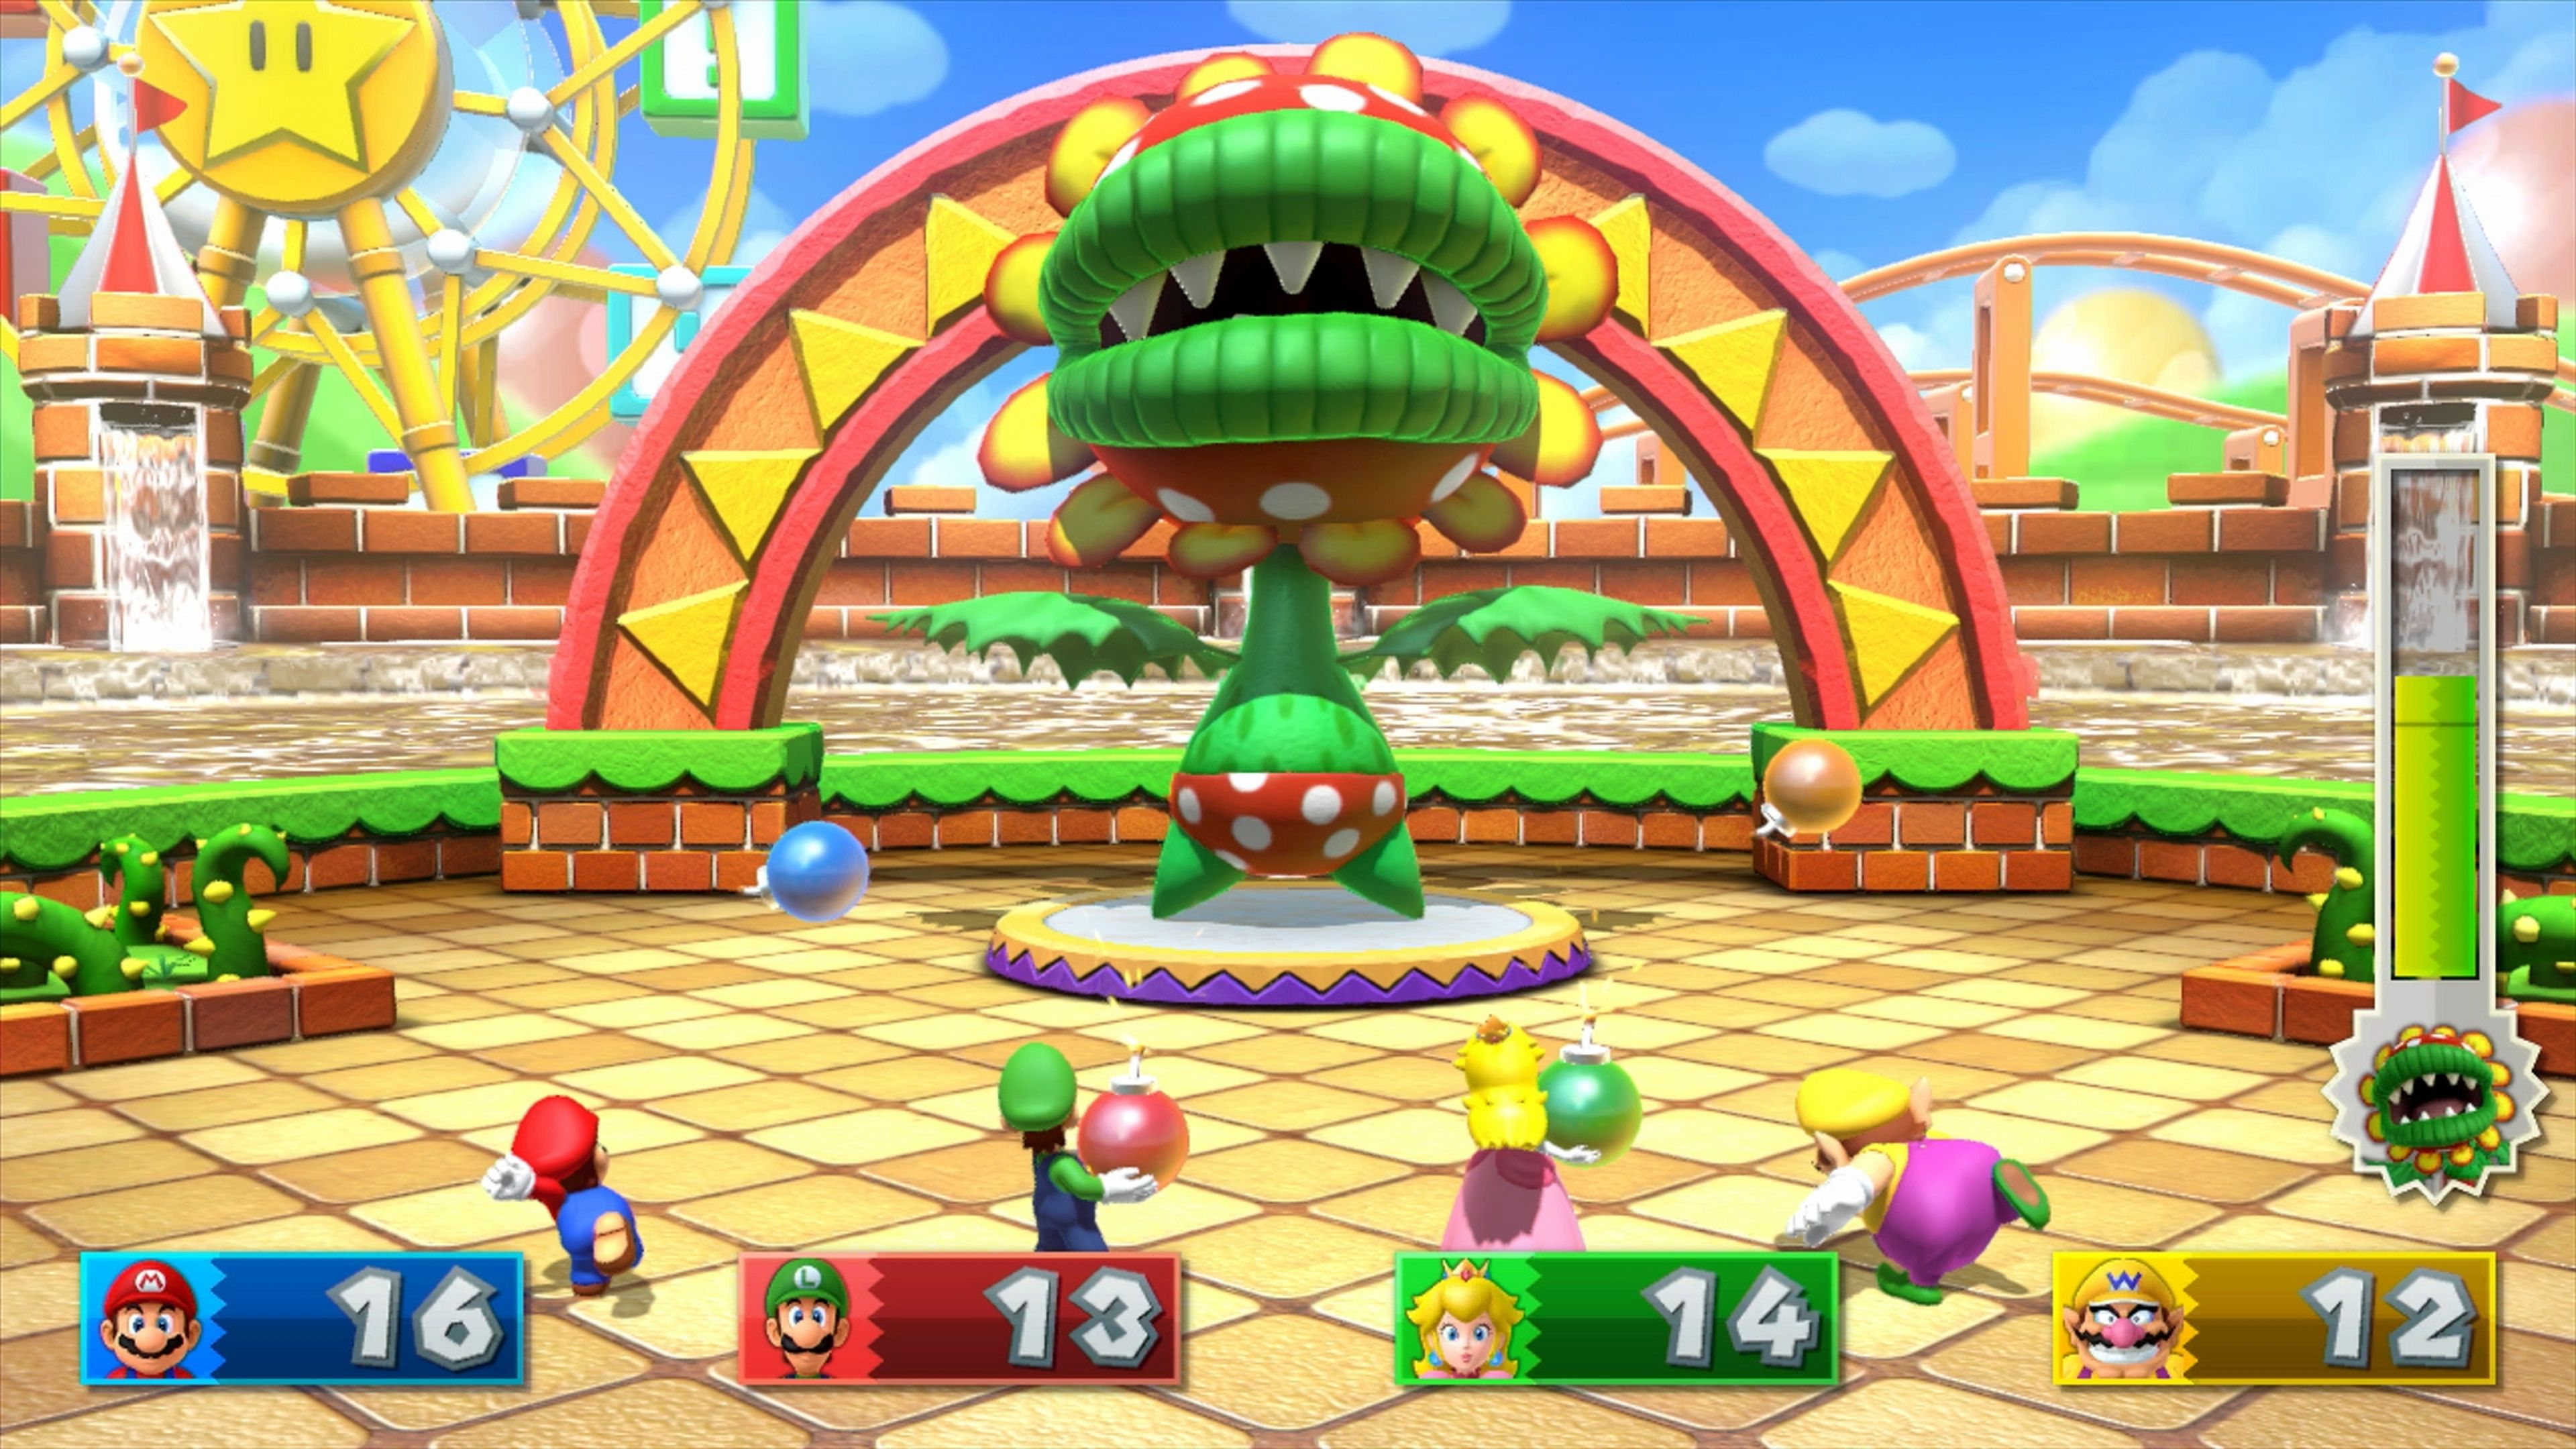 Impresiones de Mario Party 10 para Wii U